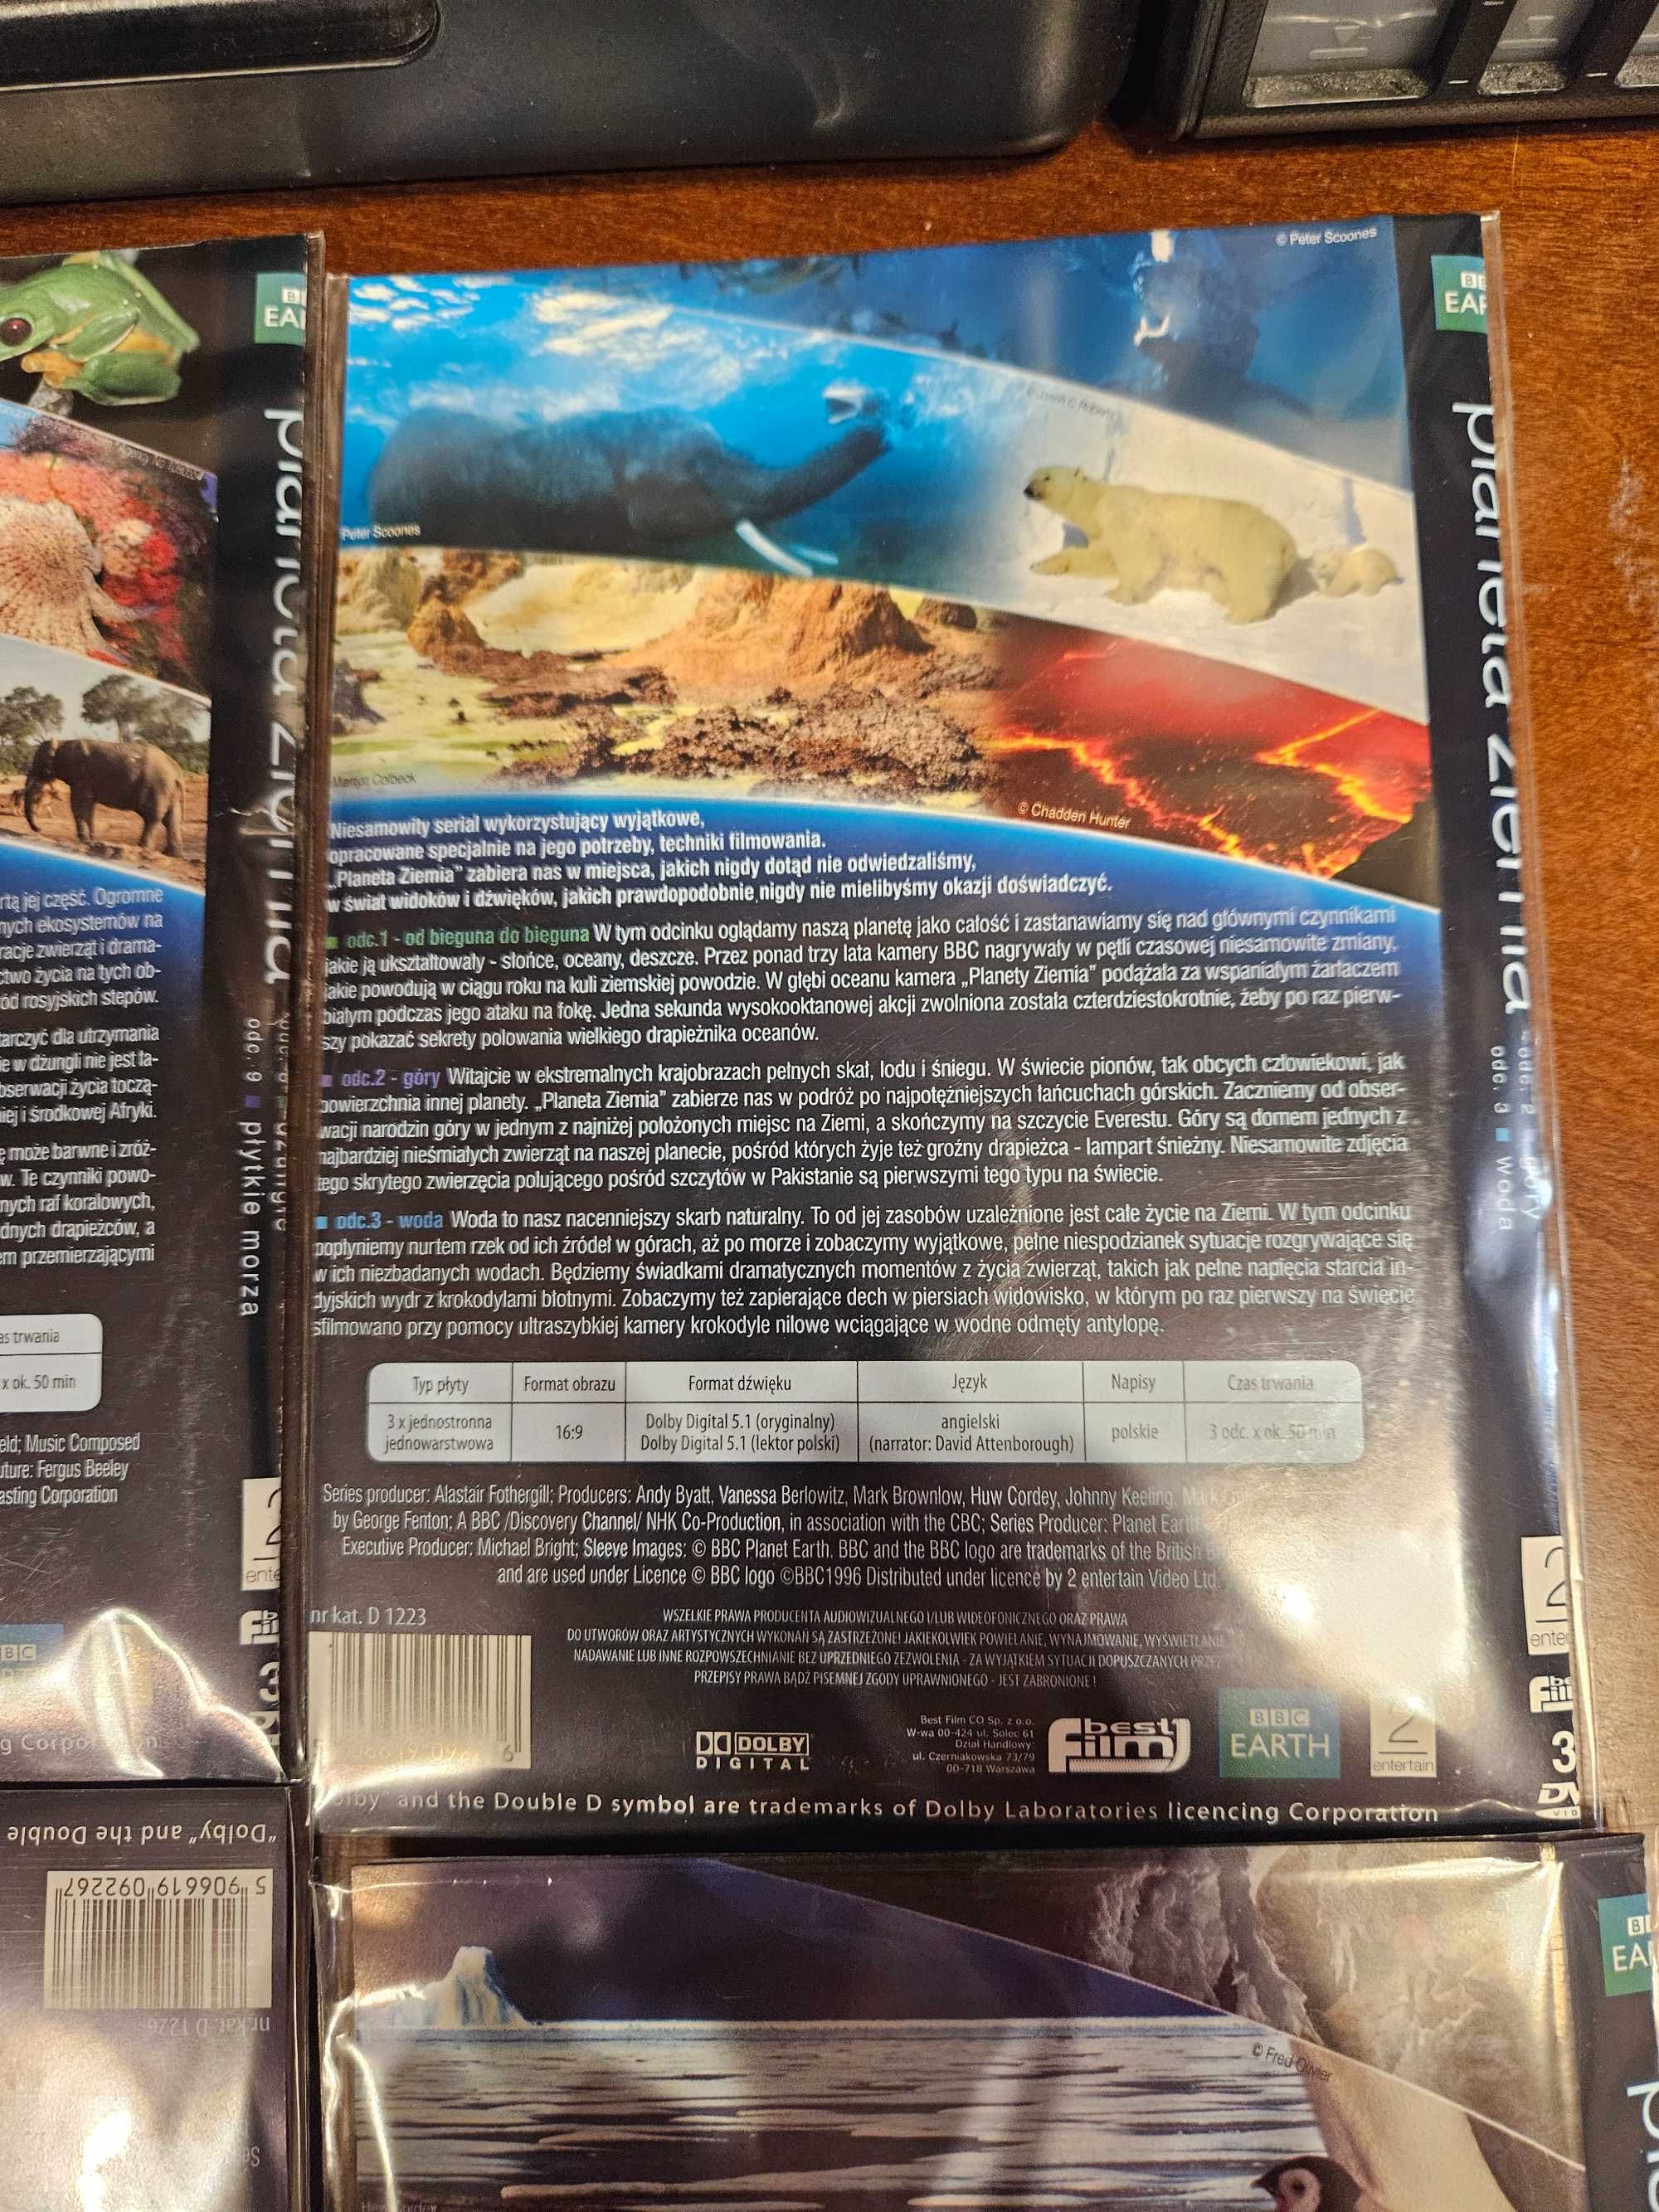 Filmy DVD Planeta Ziemia Zestaw 12 płyt